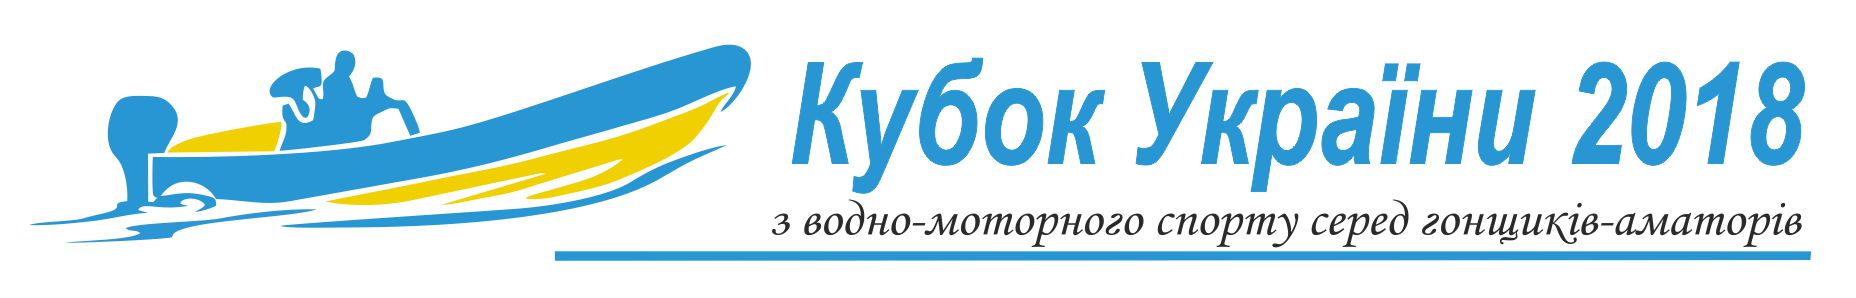 Кубок України з водно-моторного спорту 2018 року, гонки водно-моторные, кубок водно-моторного спорта